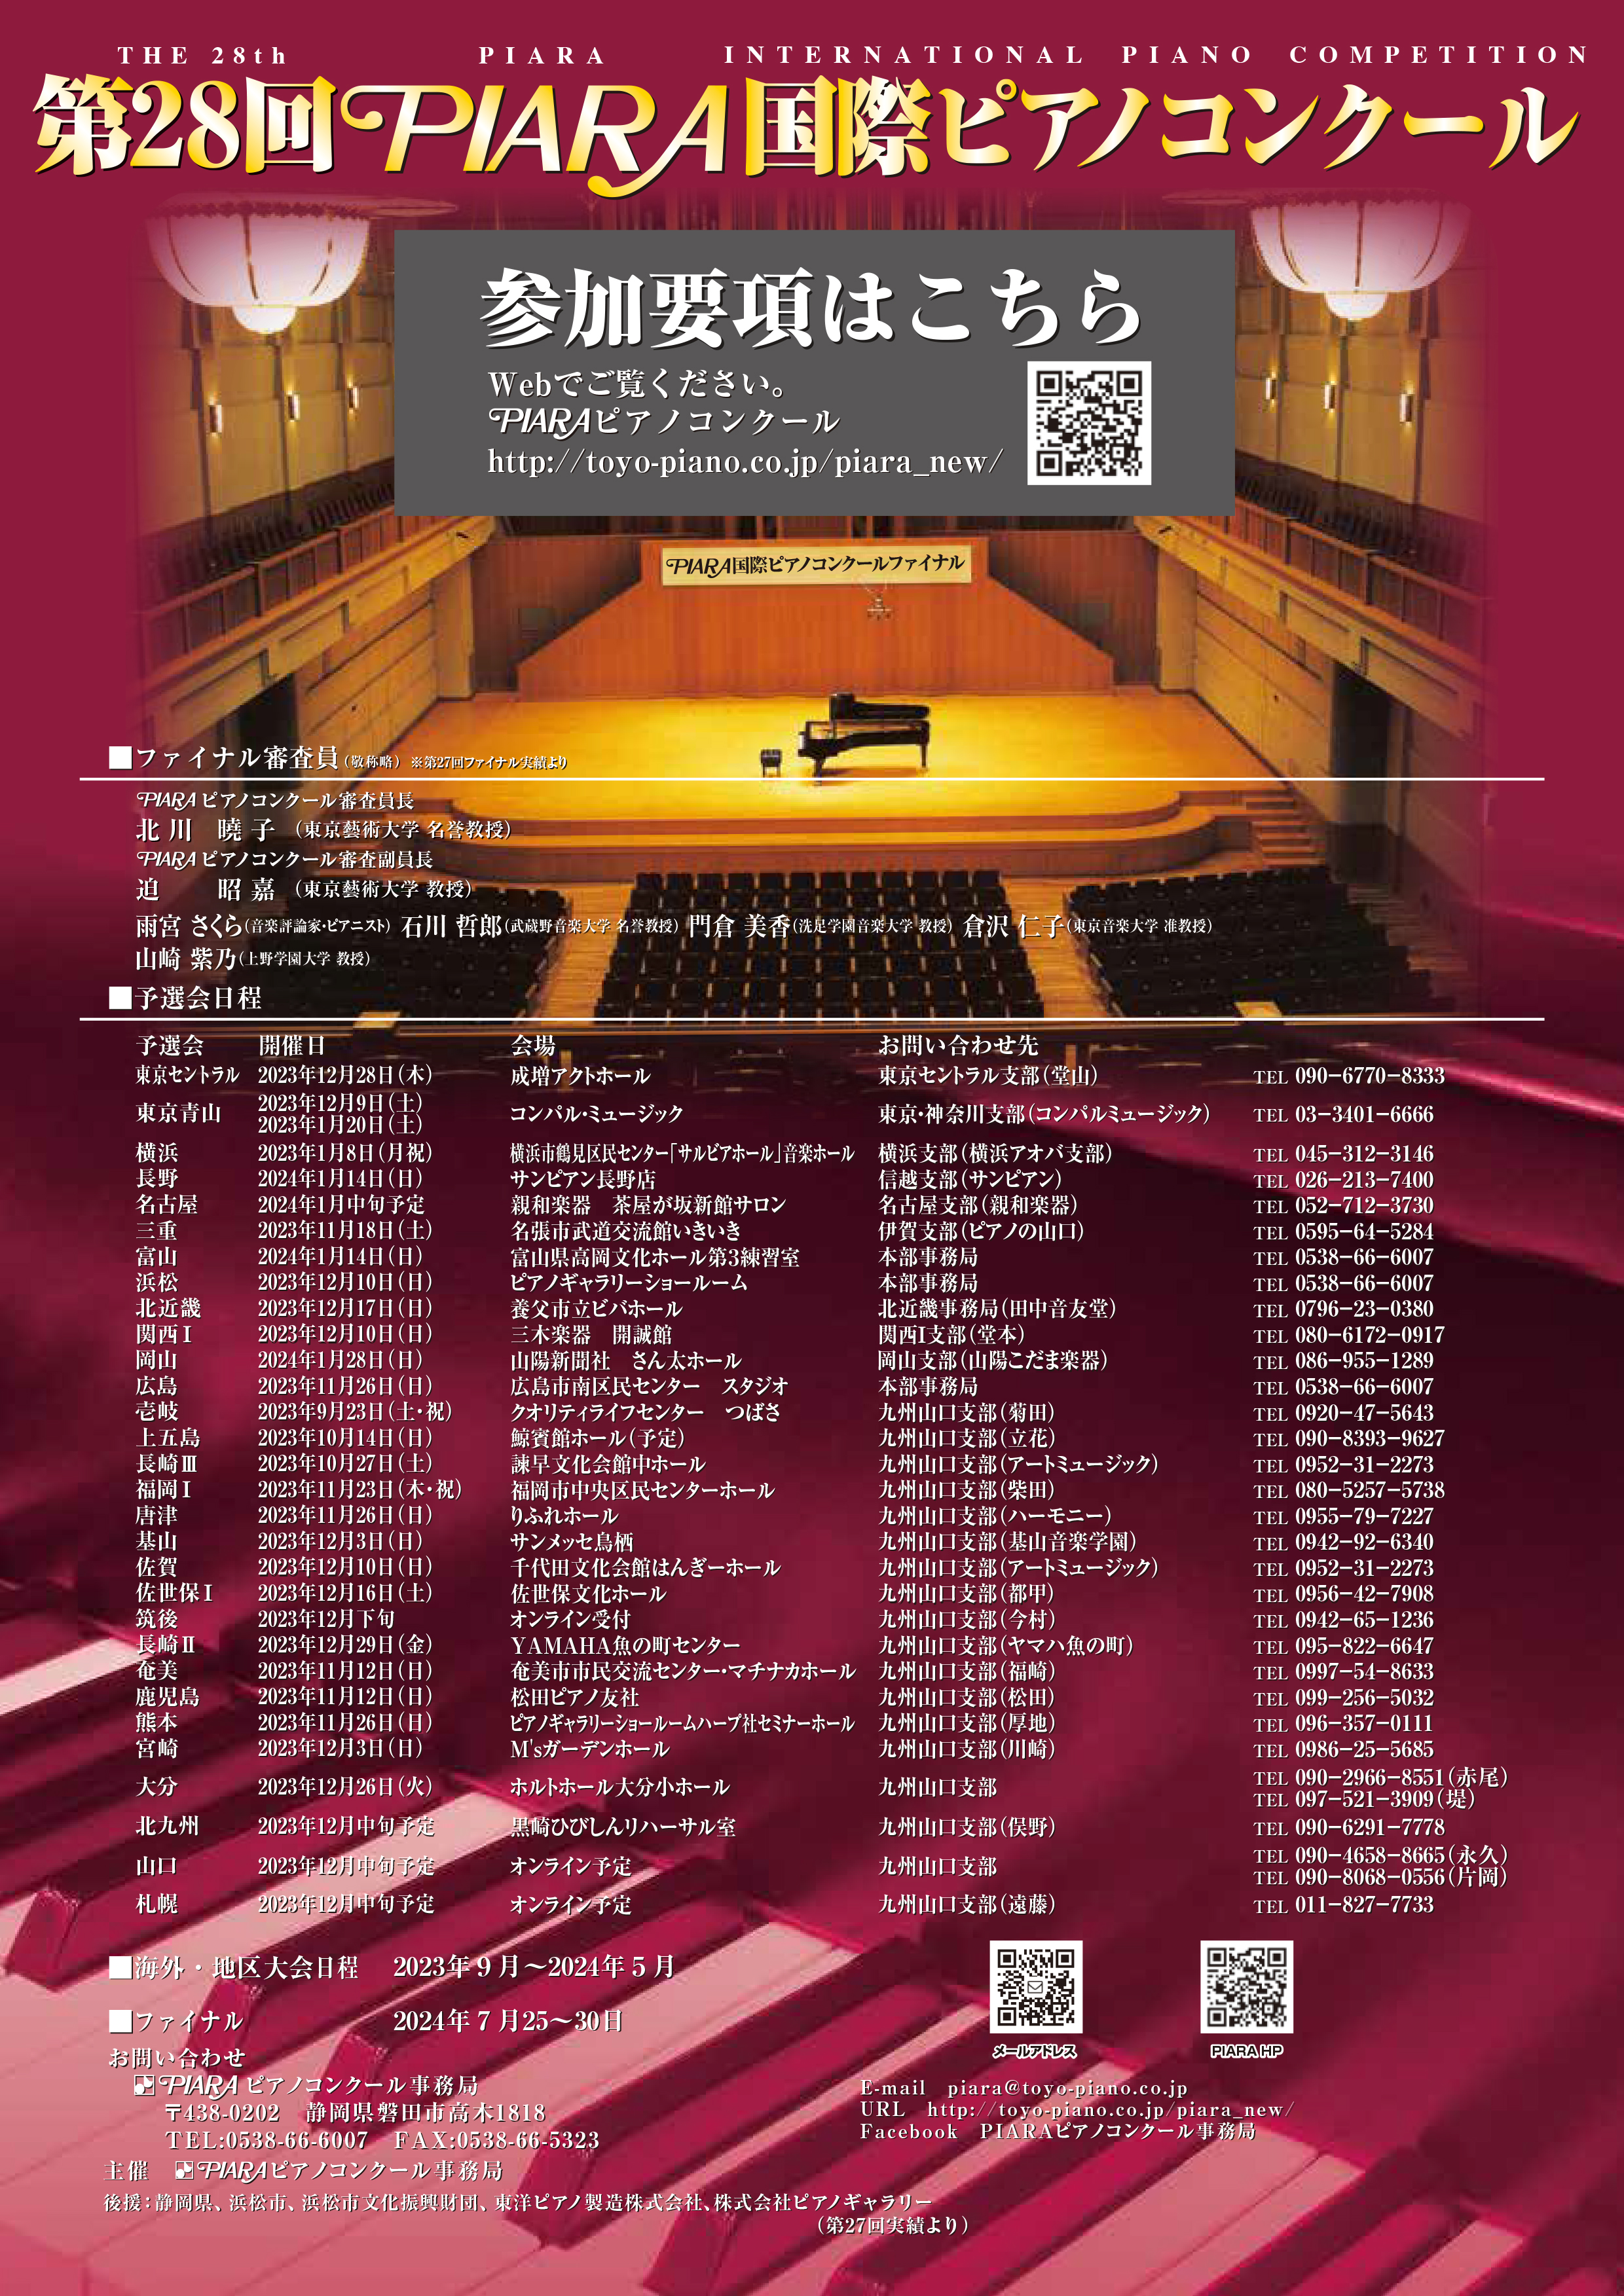 【オルビスホール情報】 3月29日(金)・30日(土）第28回 PIARA国際ピアノコンクール関西地区大会開催！